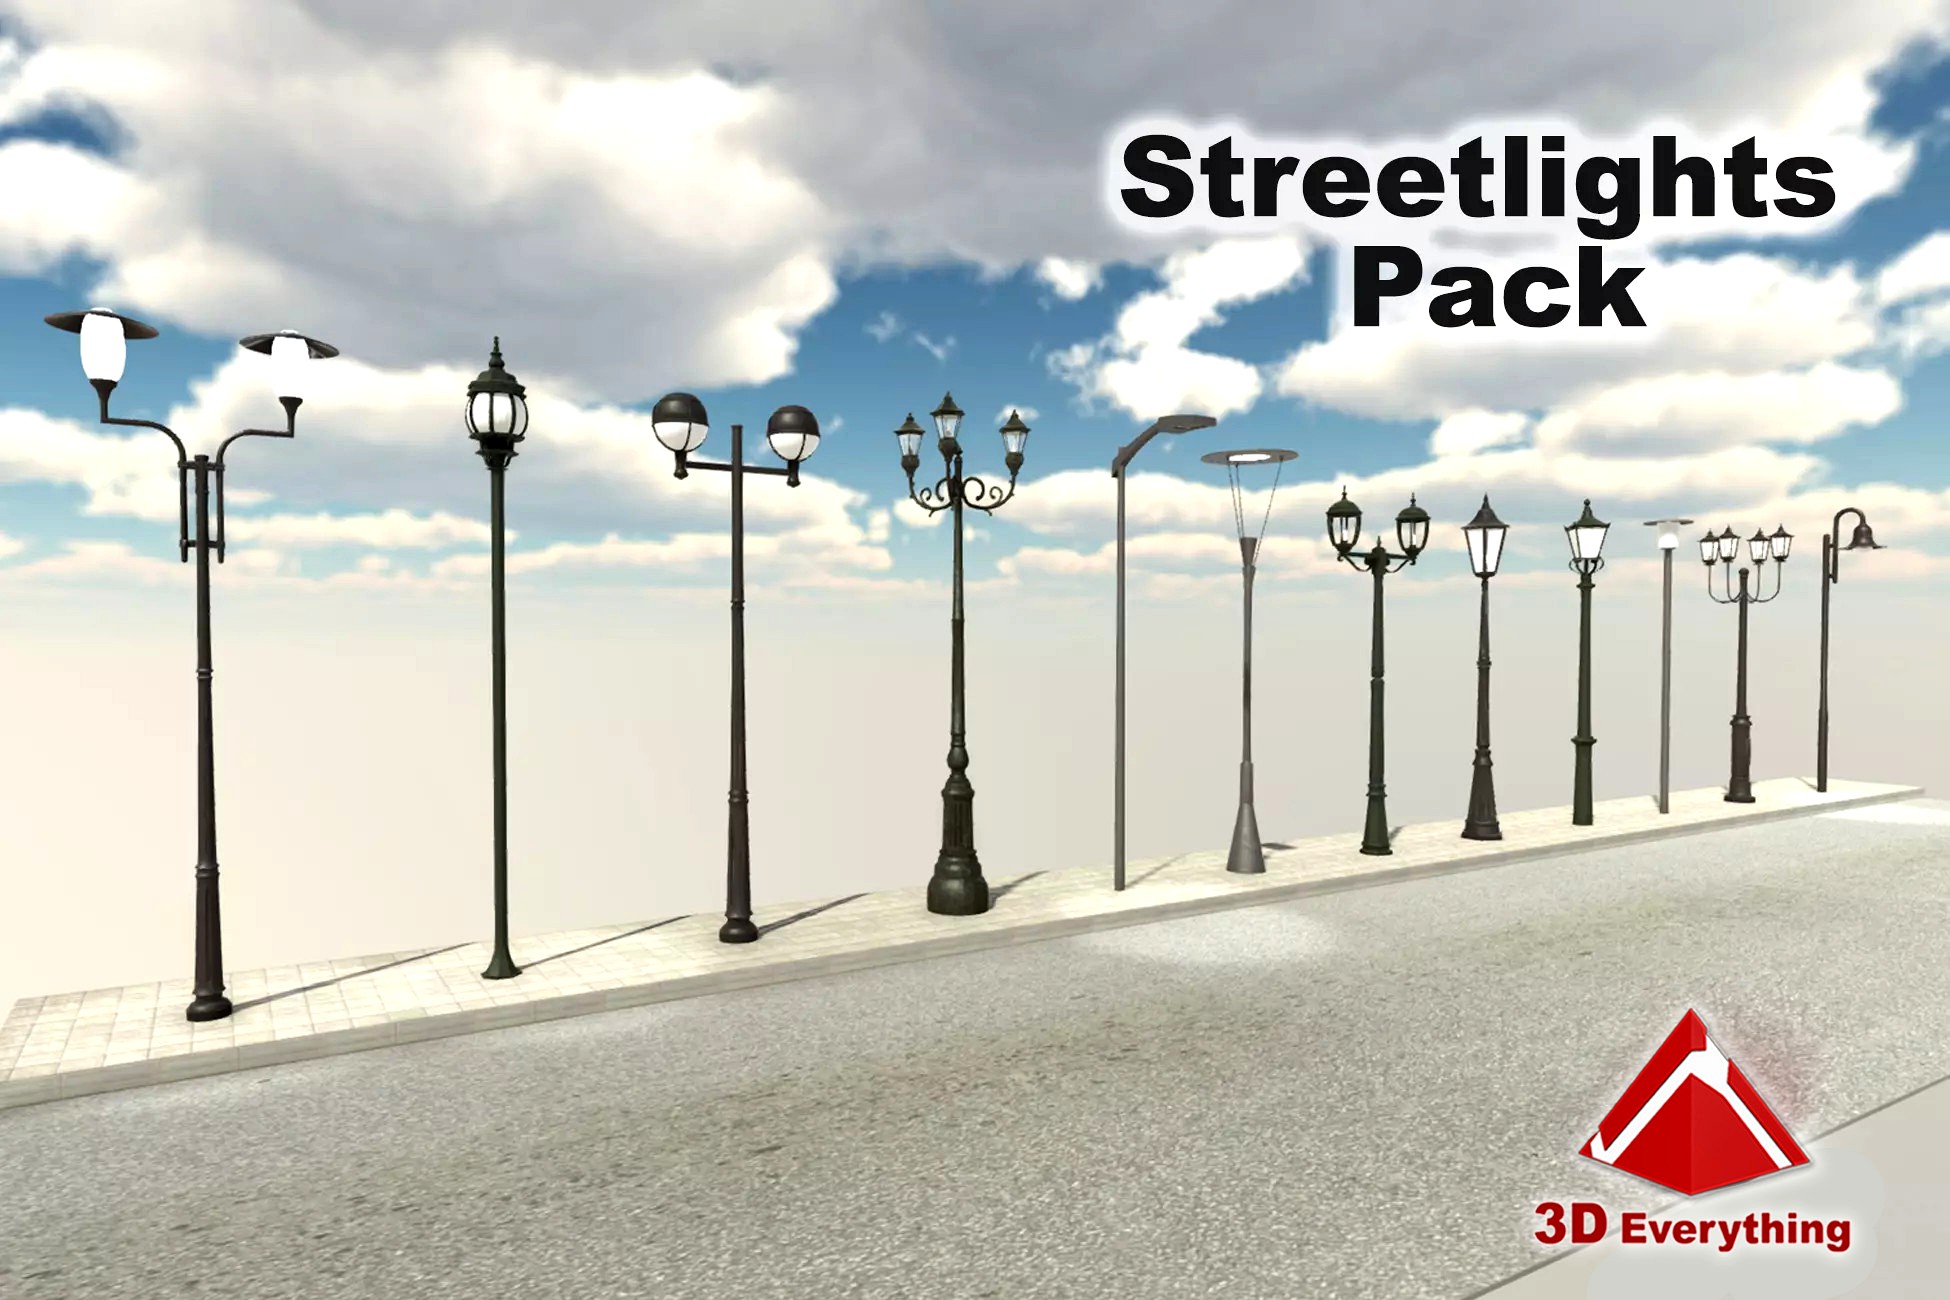 Streetlights Pack